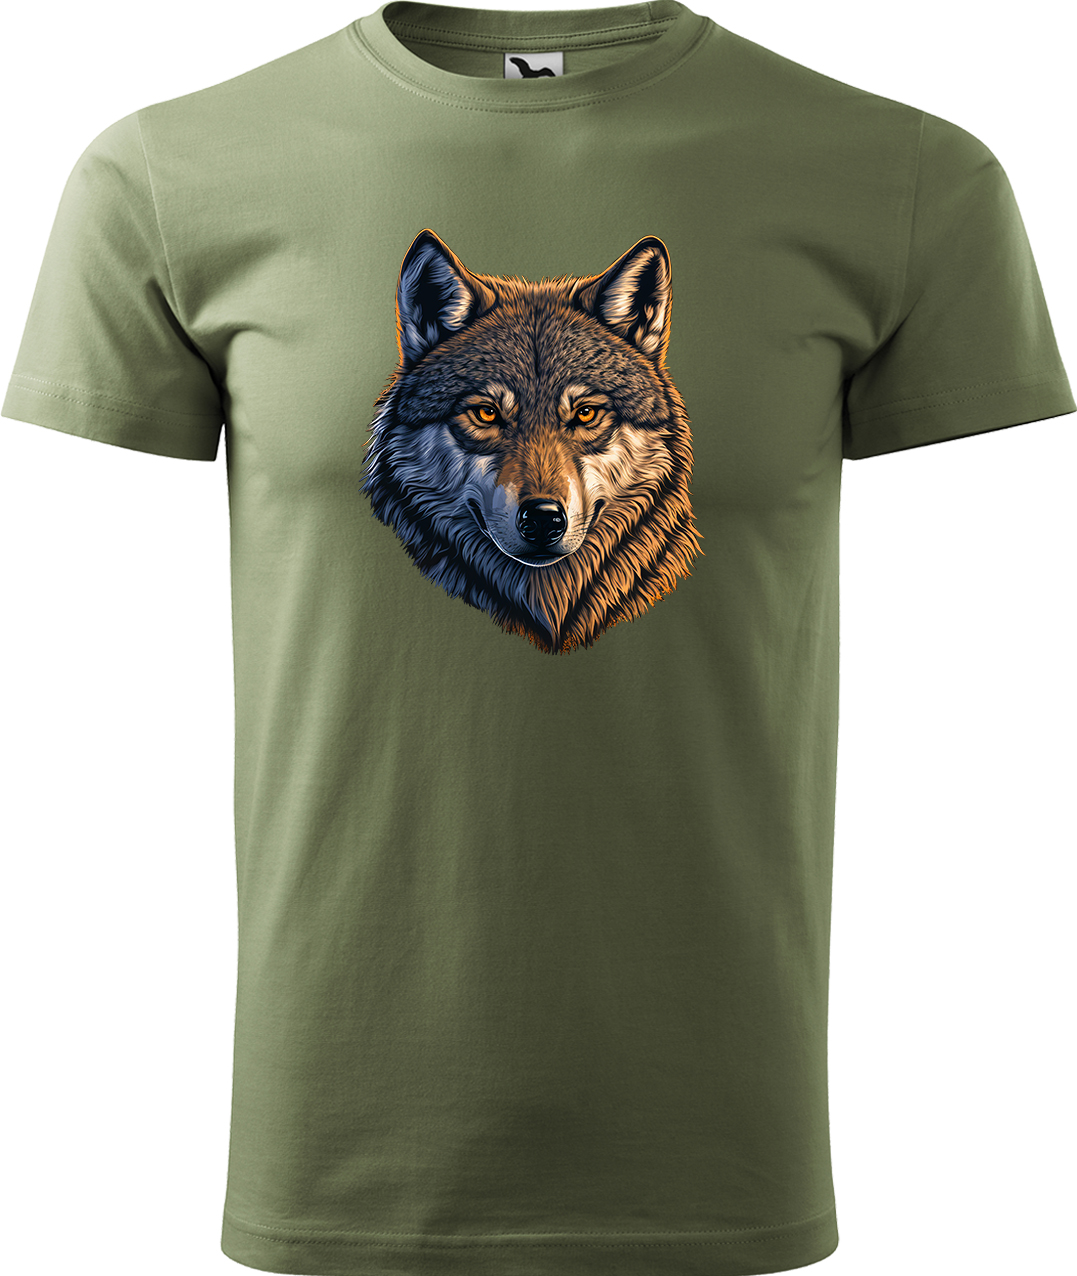 Pánské tričko s vlkem - Hlava vlka Velikost: L, Barva: Světlá khaki (28), Střih: pánský